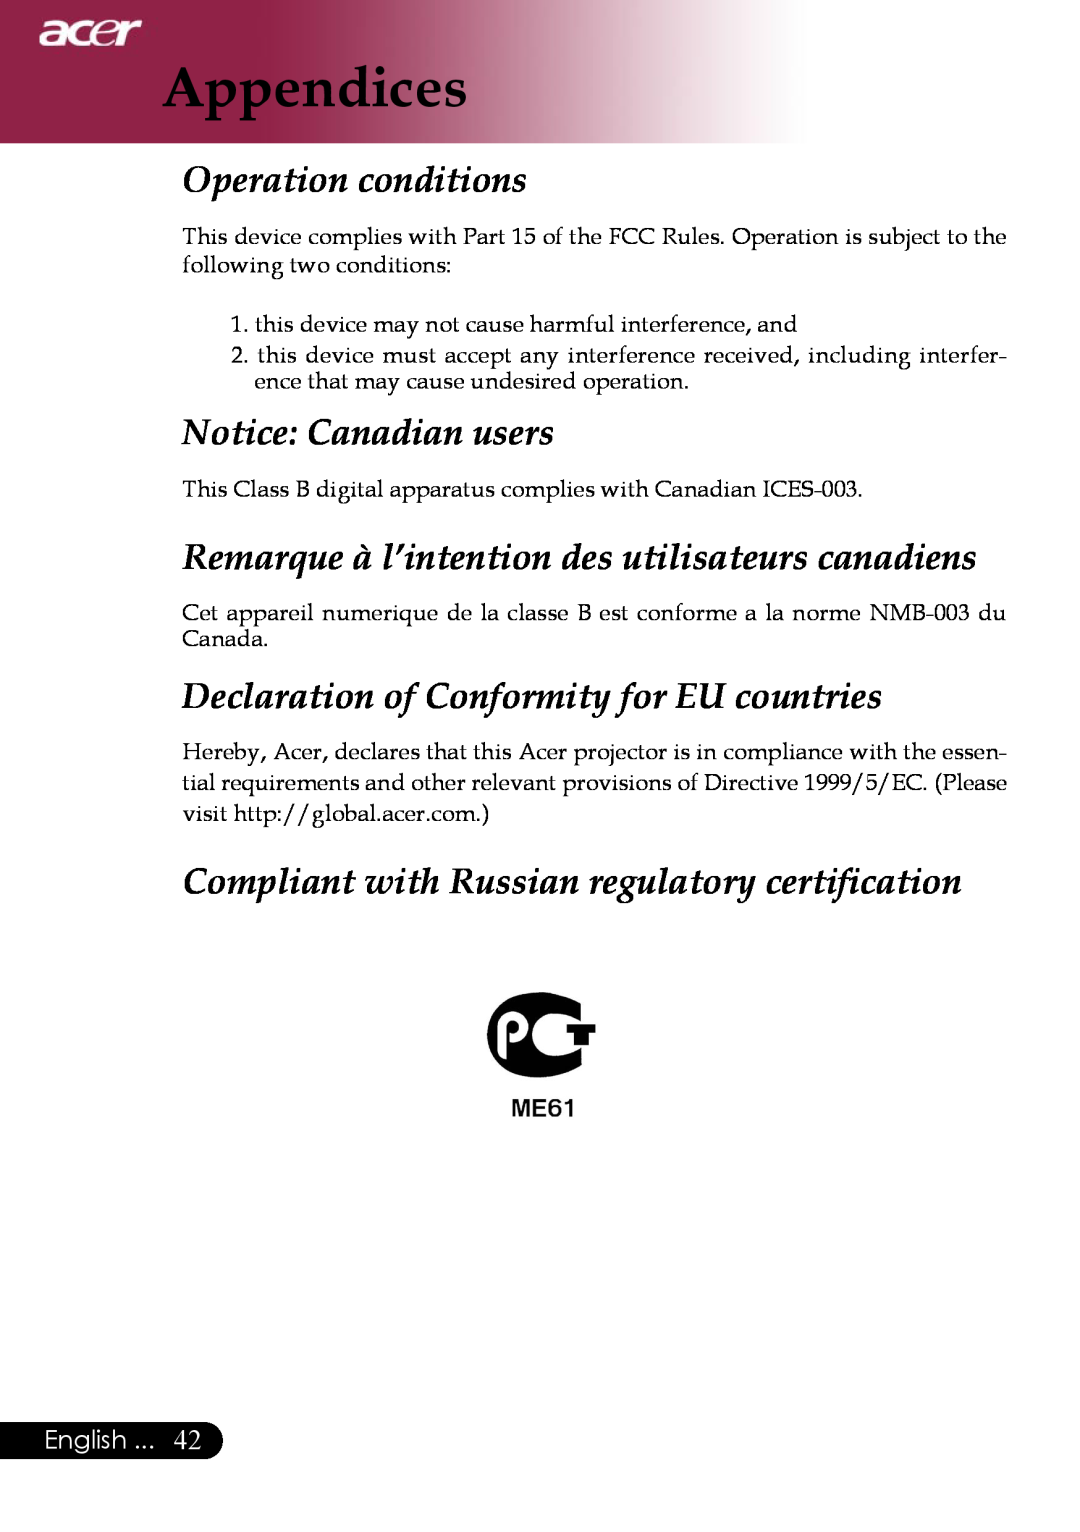 Acer PD323 Operation conditions, Notice Canadian users, Remarque à l’intention des utilisateurs canadiens, Appendices 